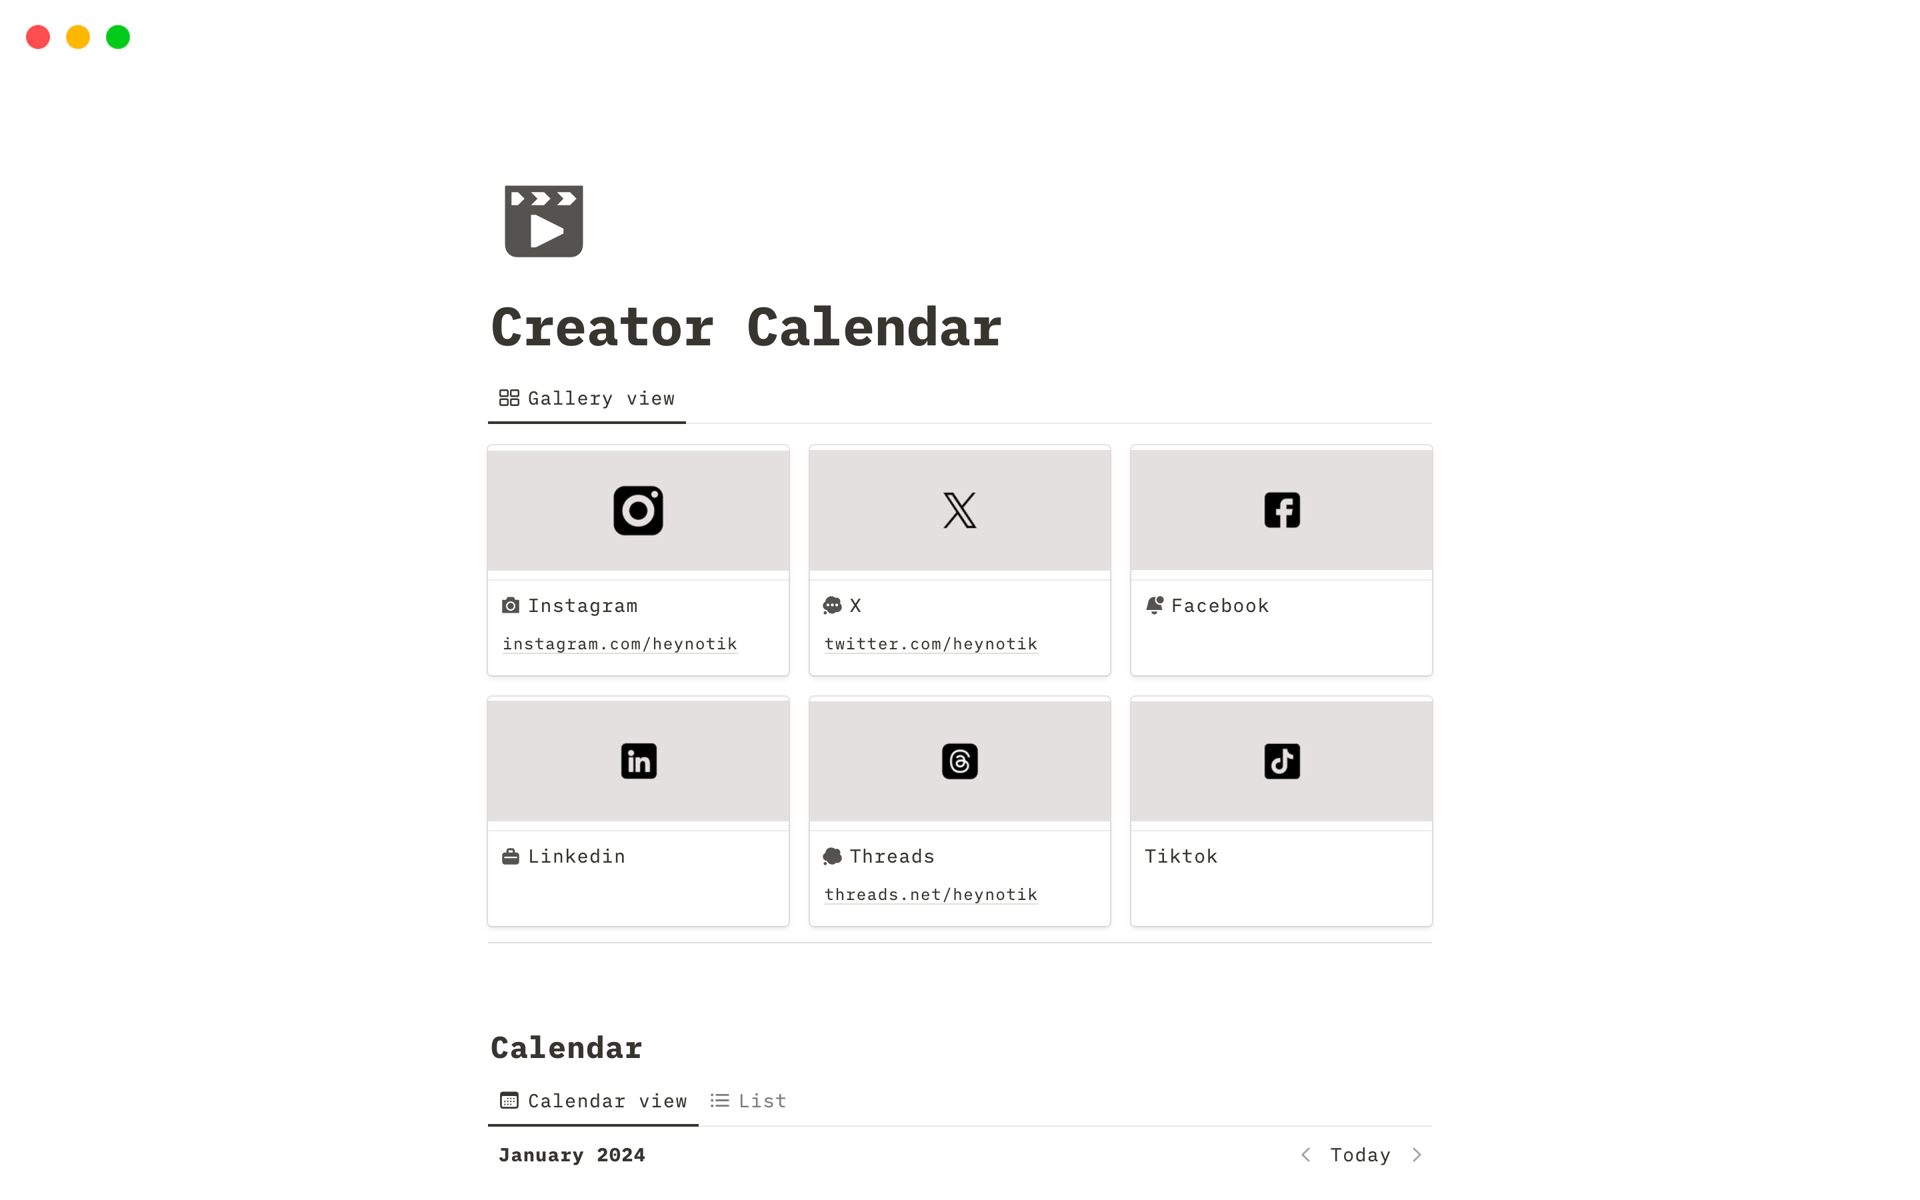 Aperçu du modèle de Creator Calendar